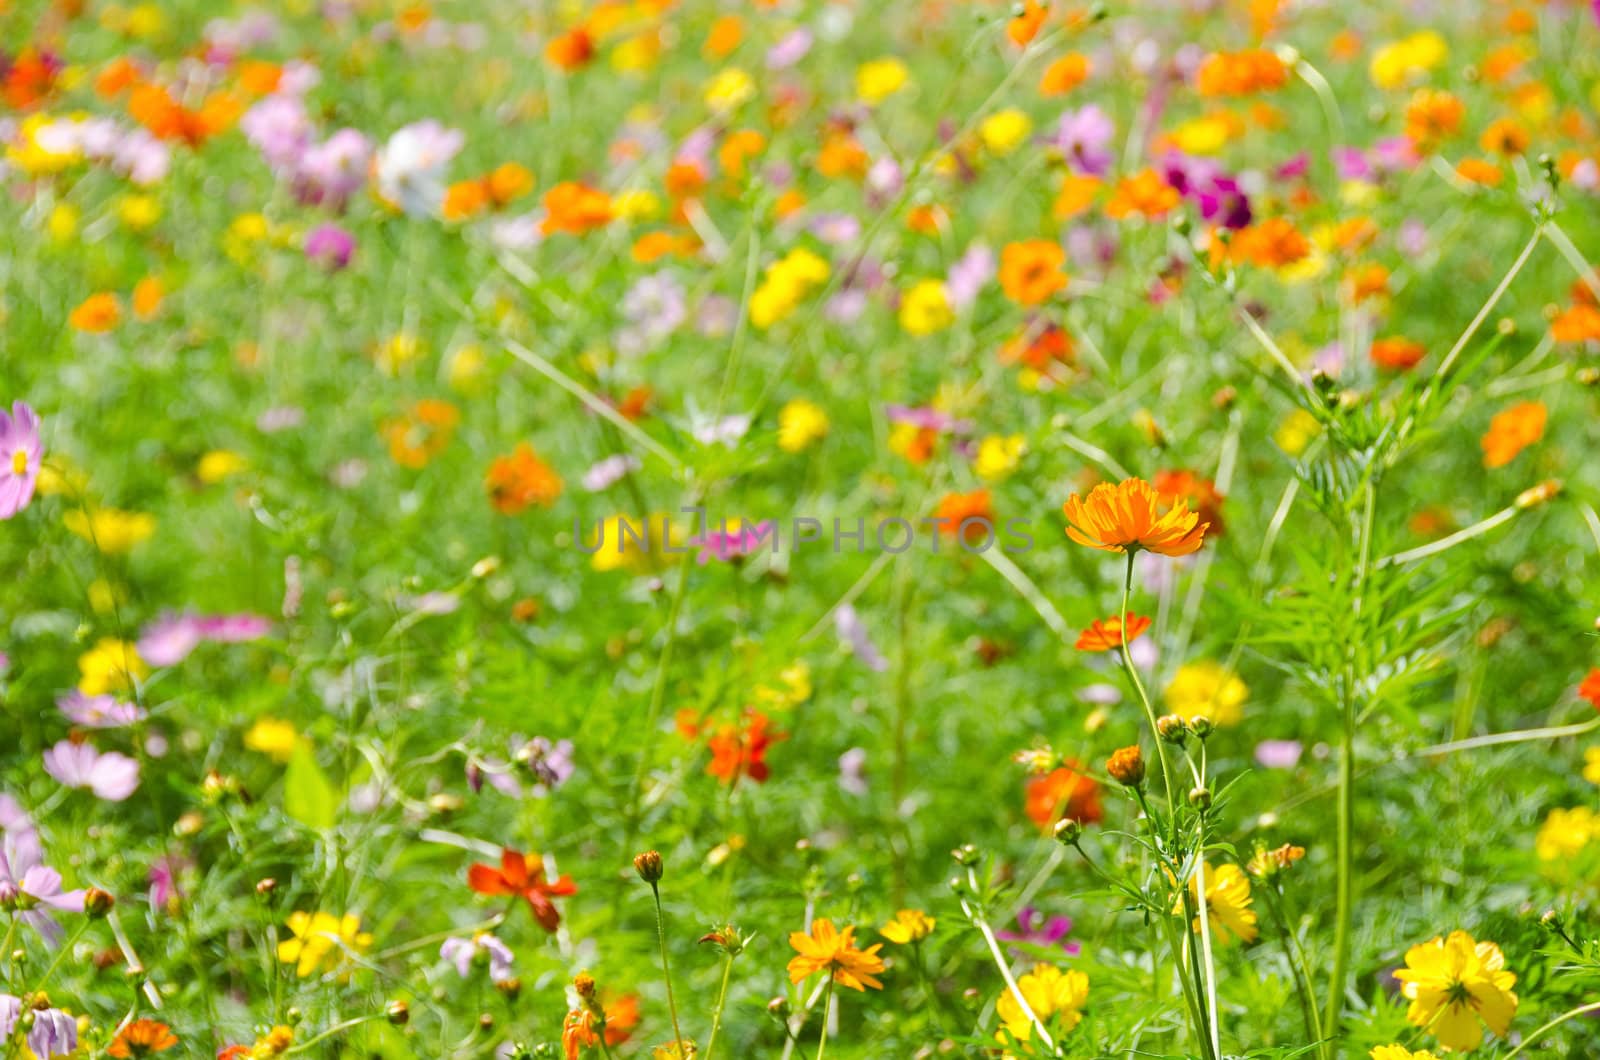 A field of cosmos flowers, Cosmos bipinnatus, in Japan